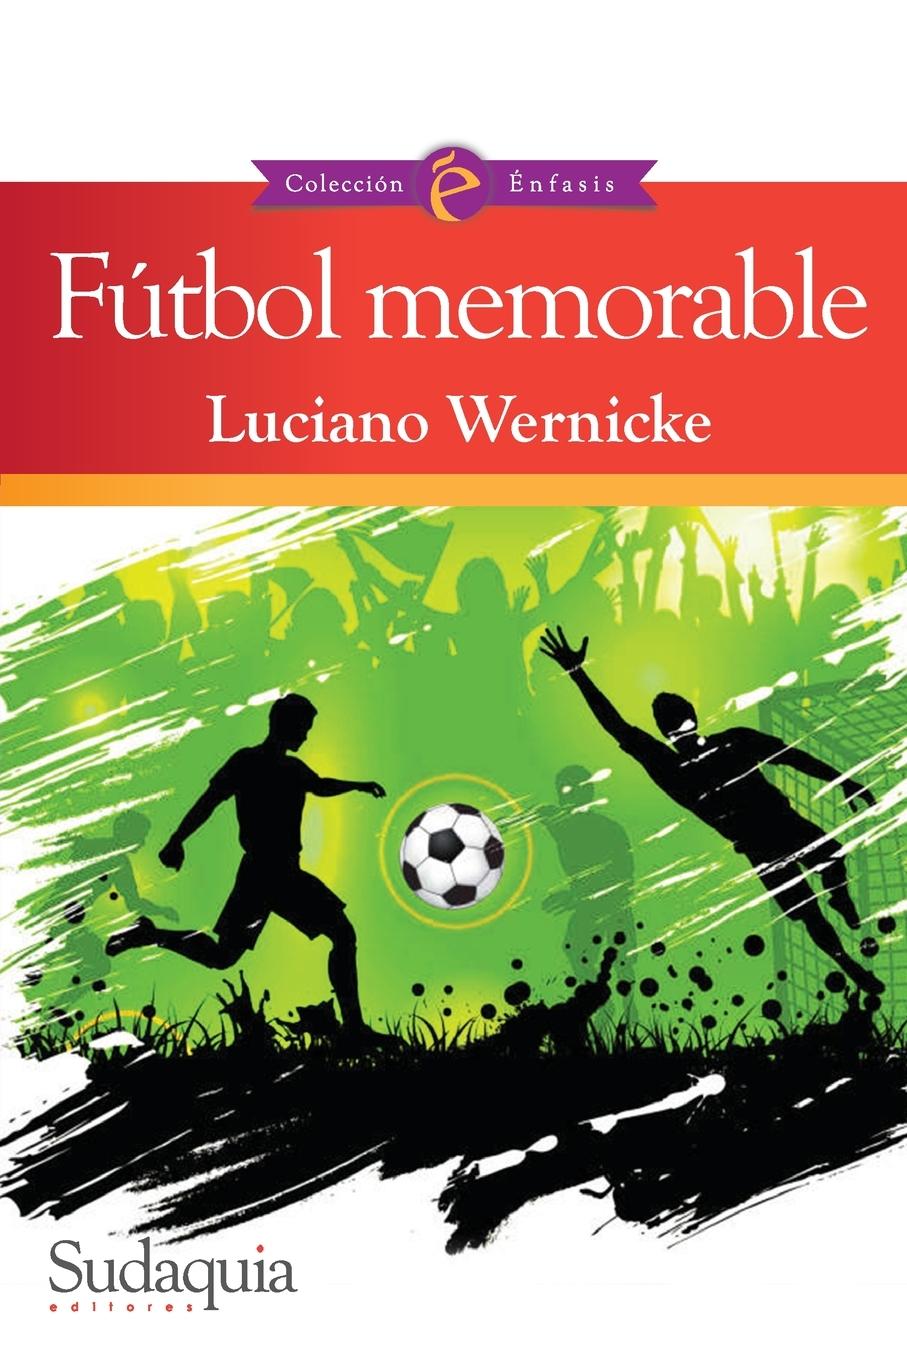 Книга Futbol memorable 